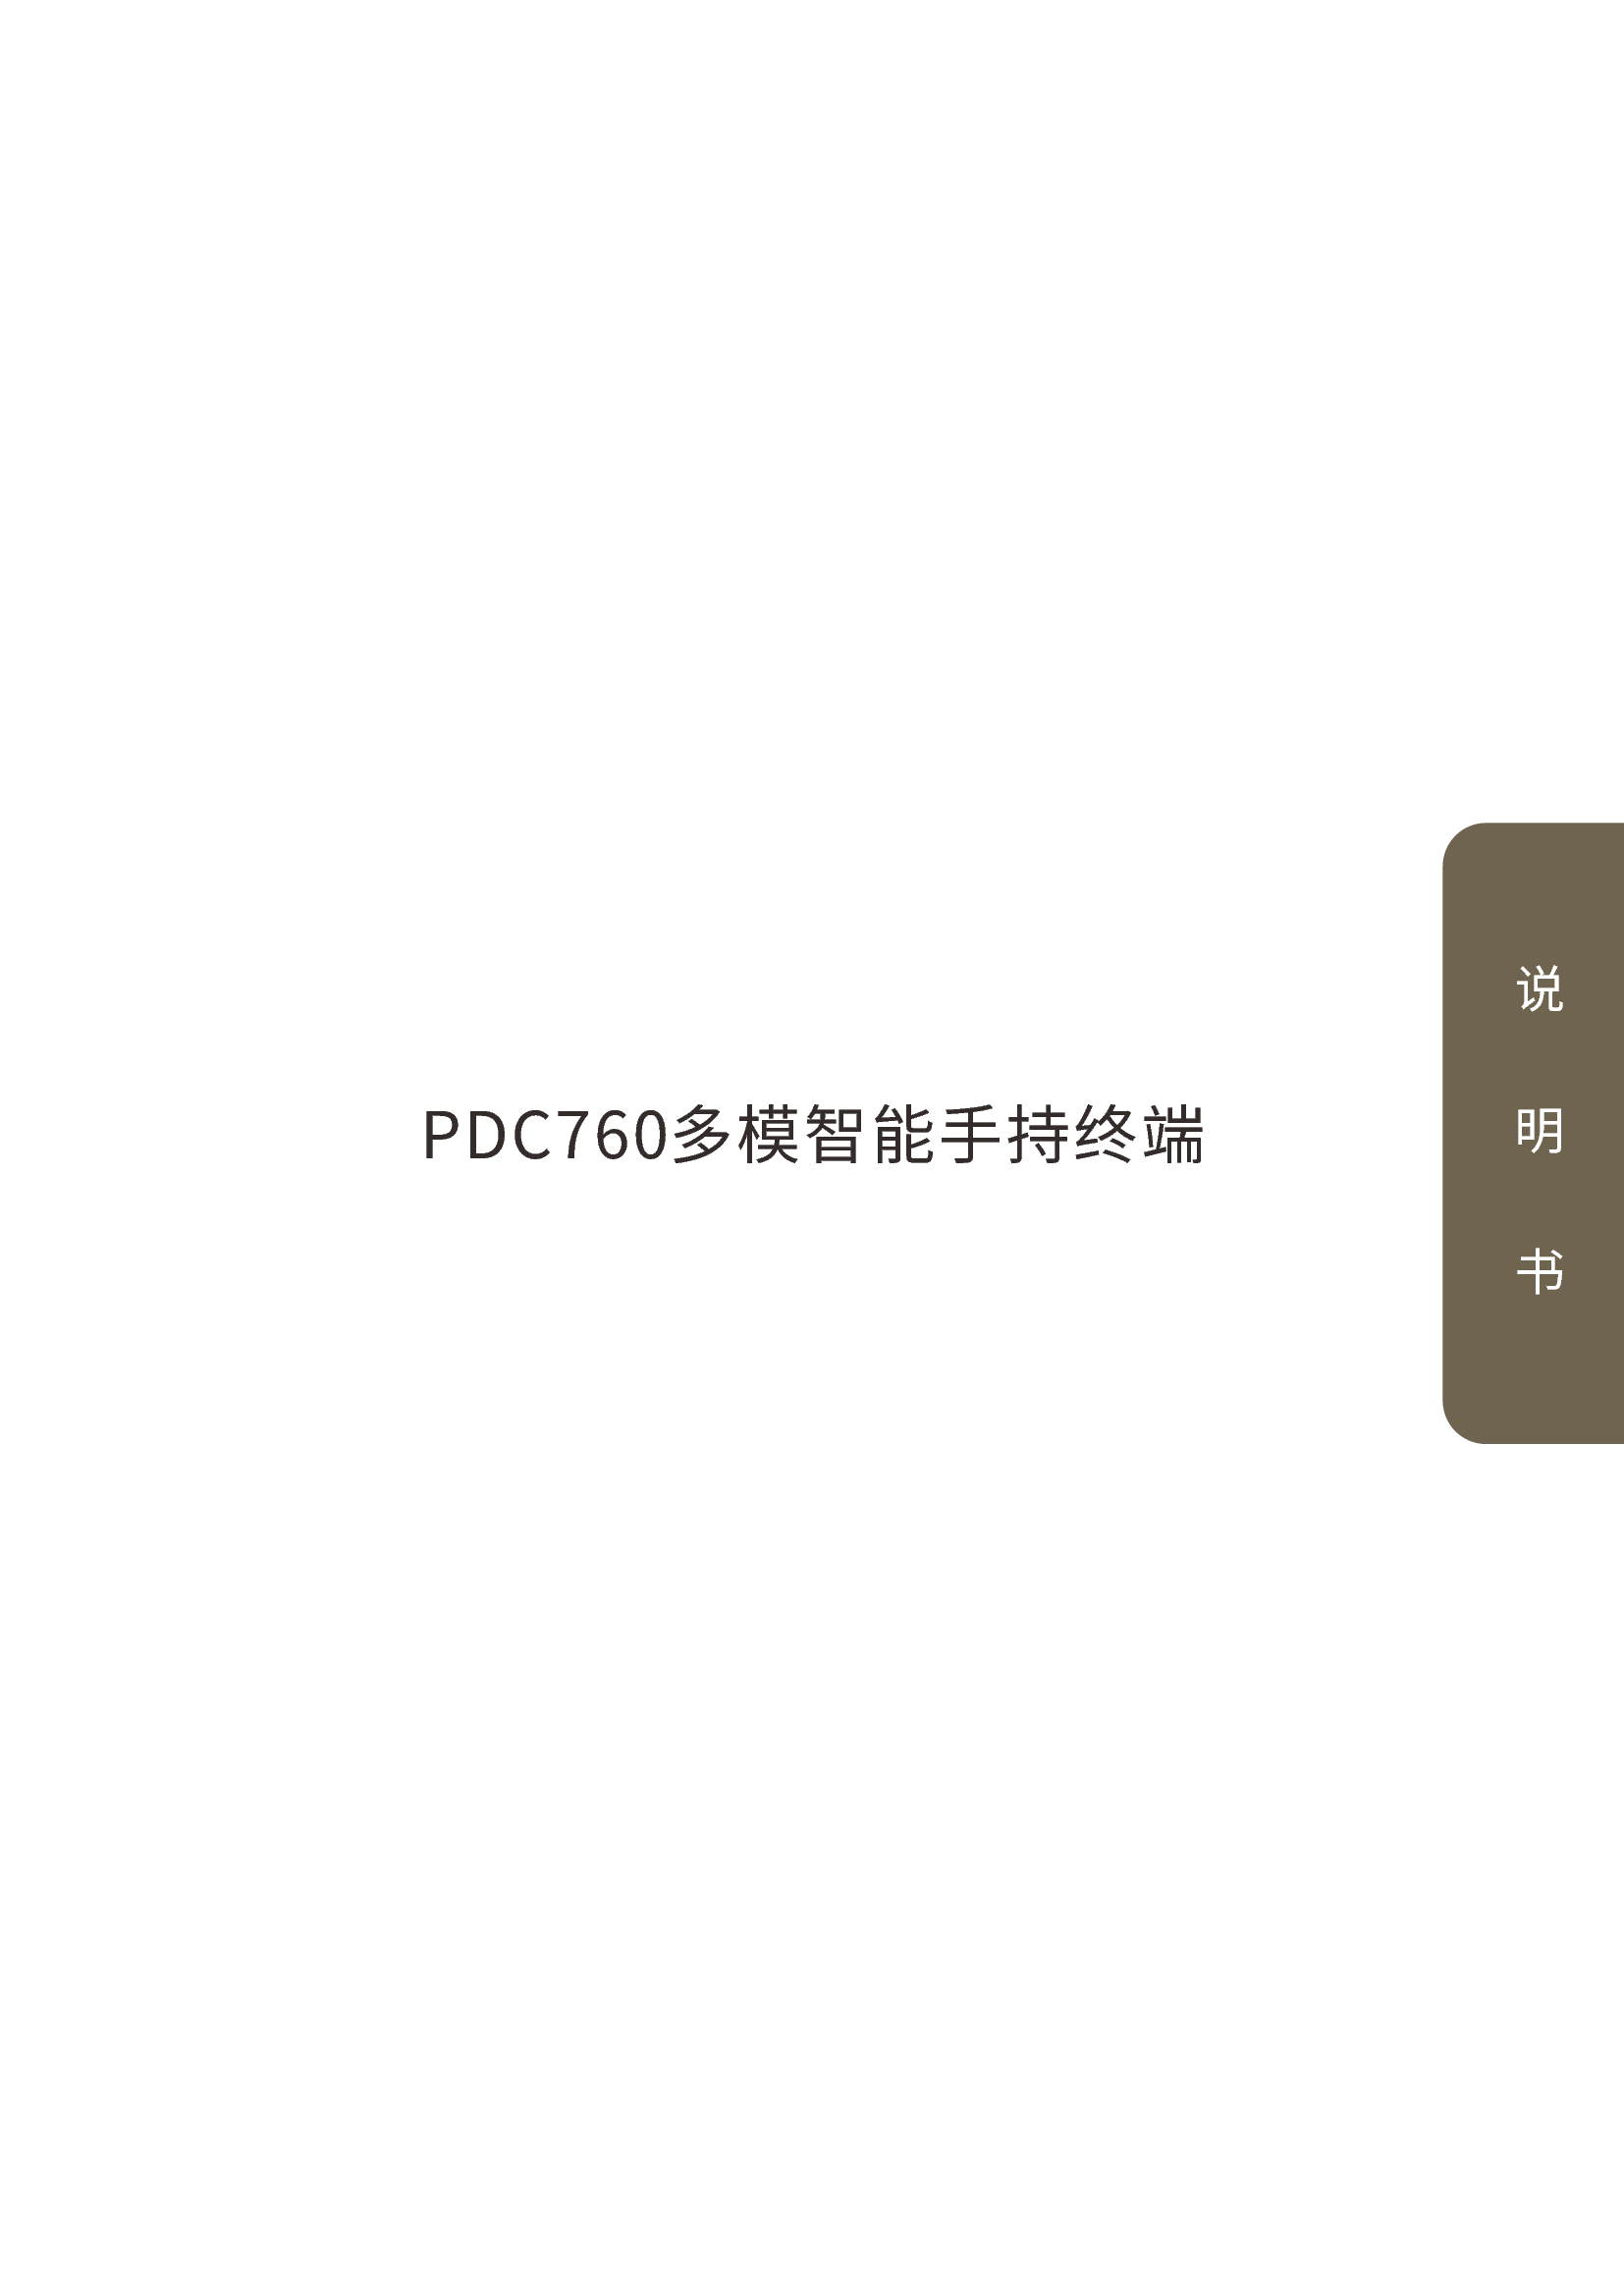 海能达 Hytera PDC760 使用说明书 封面